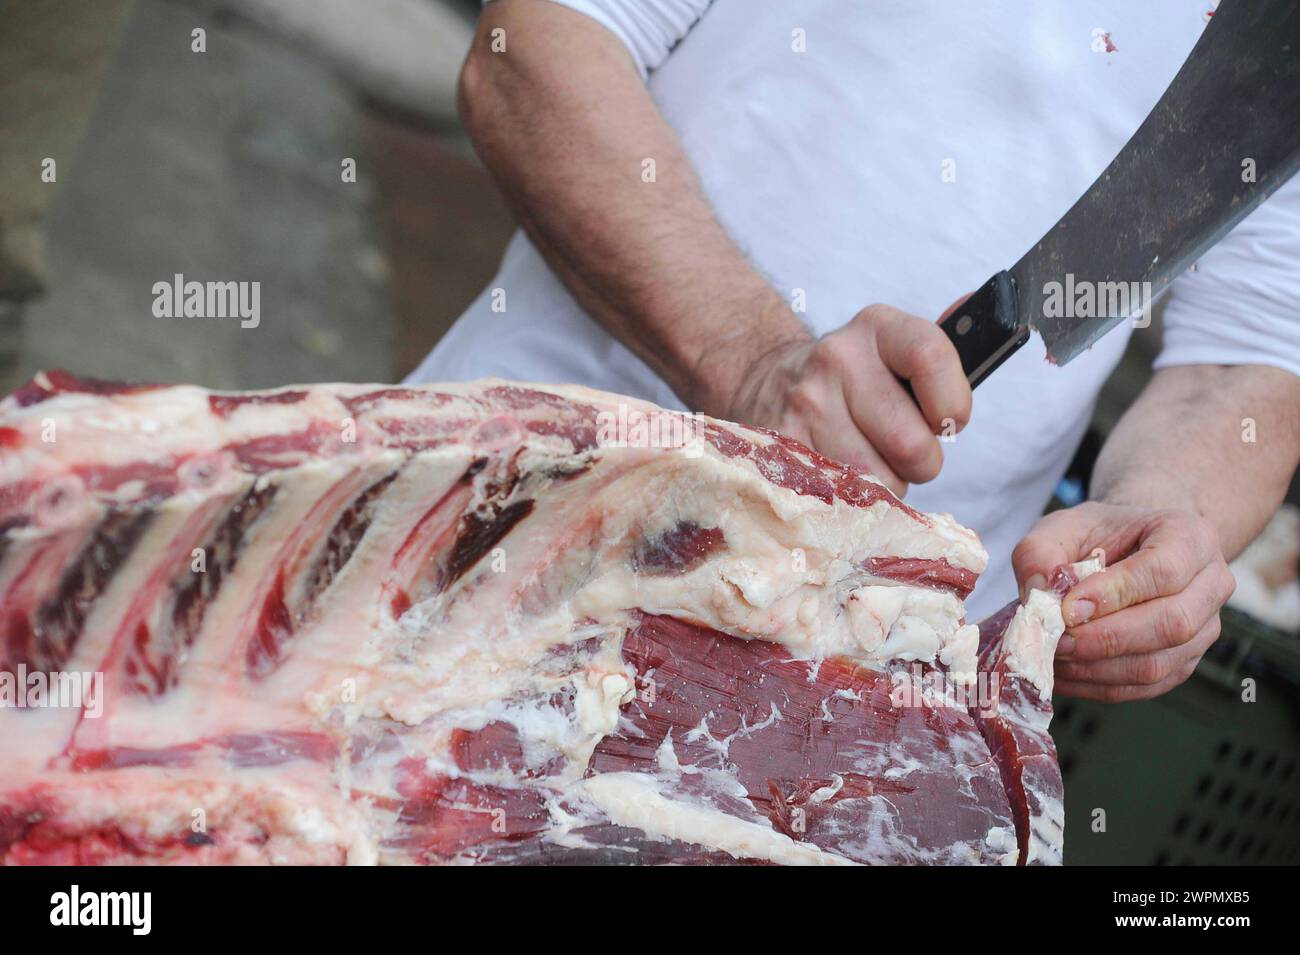 Bistecca Fiorentina taglio in Cucina/Fiorentina Steak geschnitten in der Küche Stockfoto